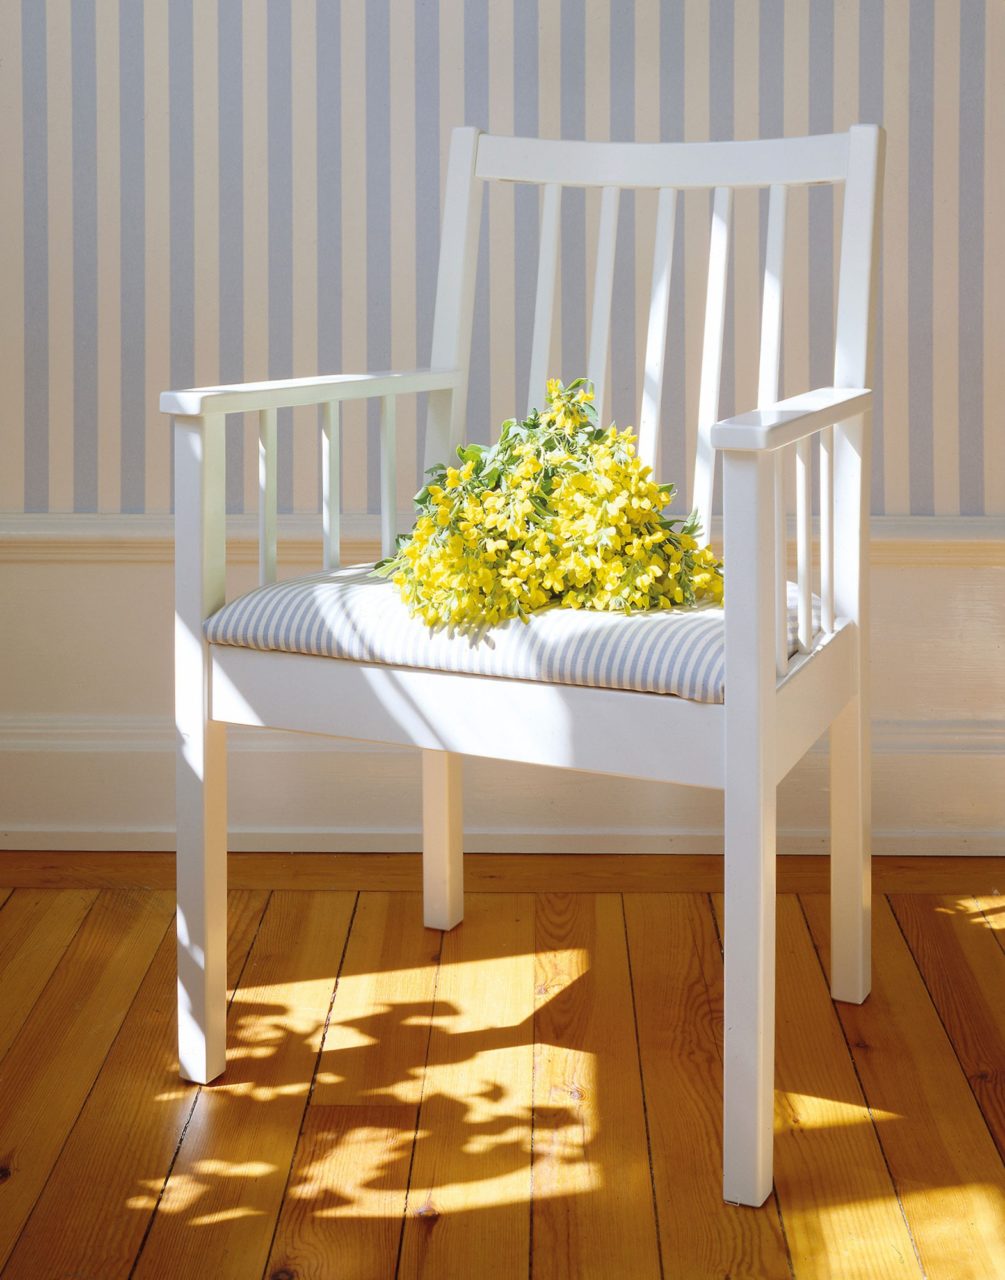 Vit karmstol i trä står på trägolv, en bukett med gula blommor ligger på den blåvitrandiga sittdynan.